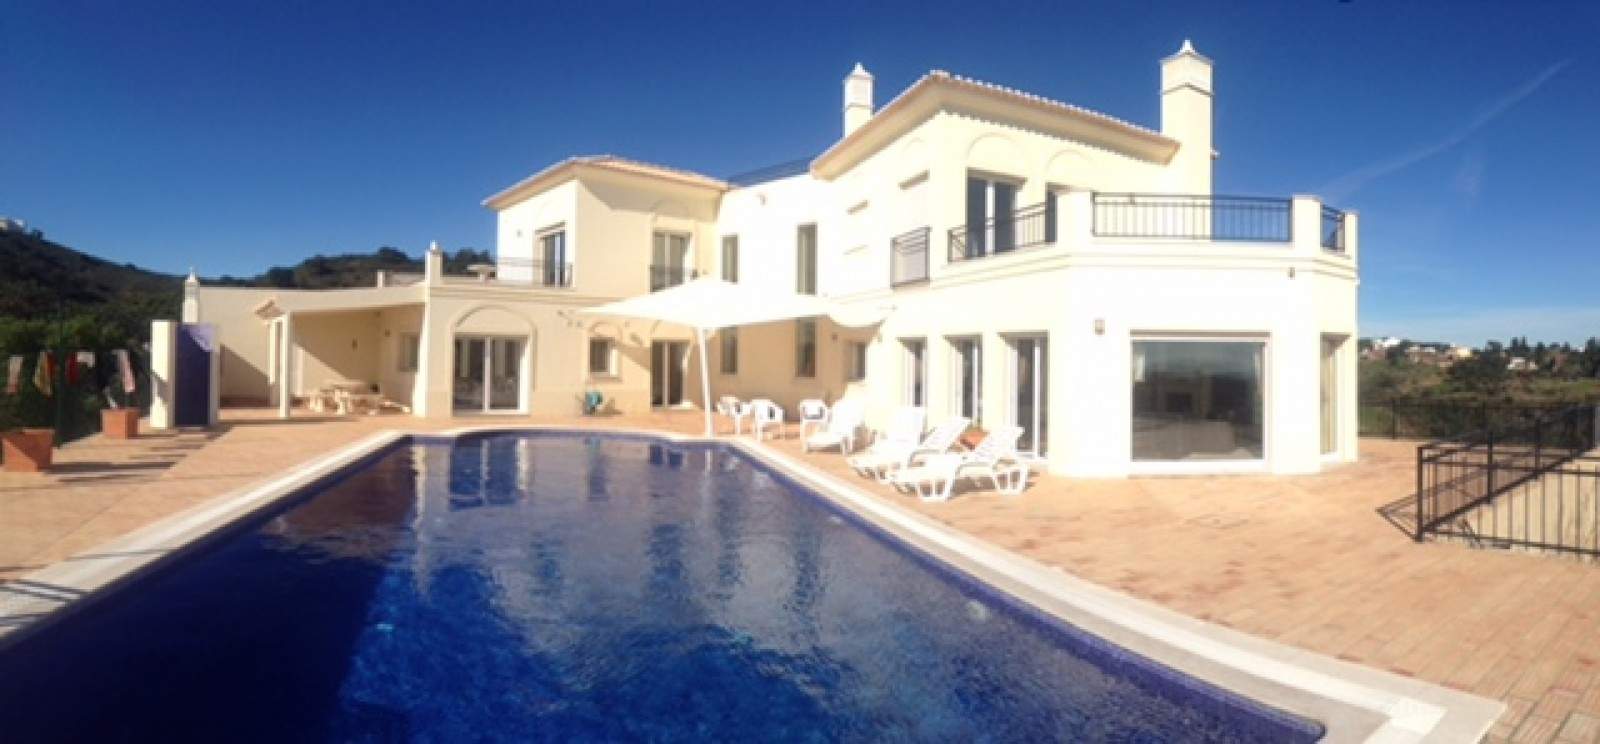 4 Bedroom Villa with swimming pool, for sale in Tavira, Algarve_201173